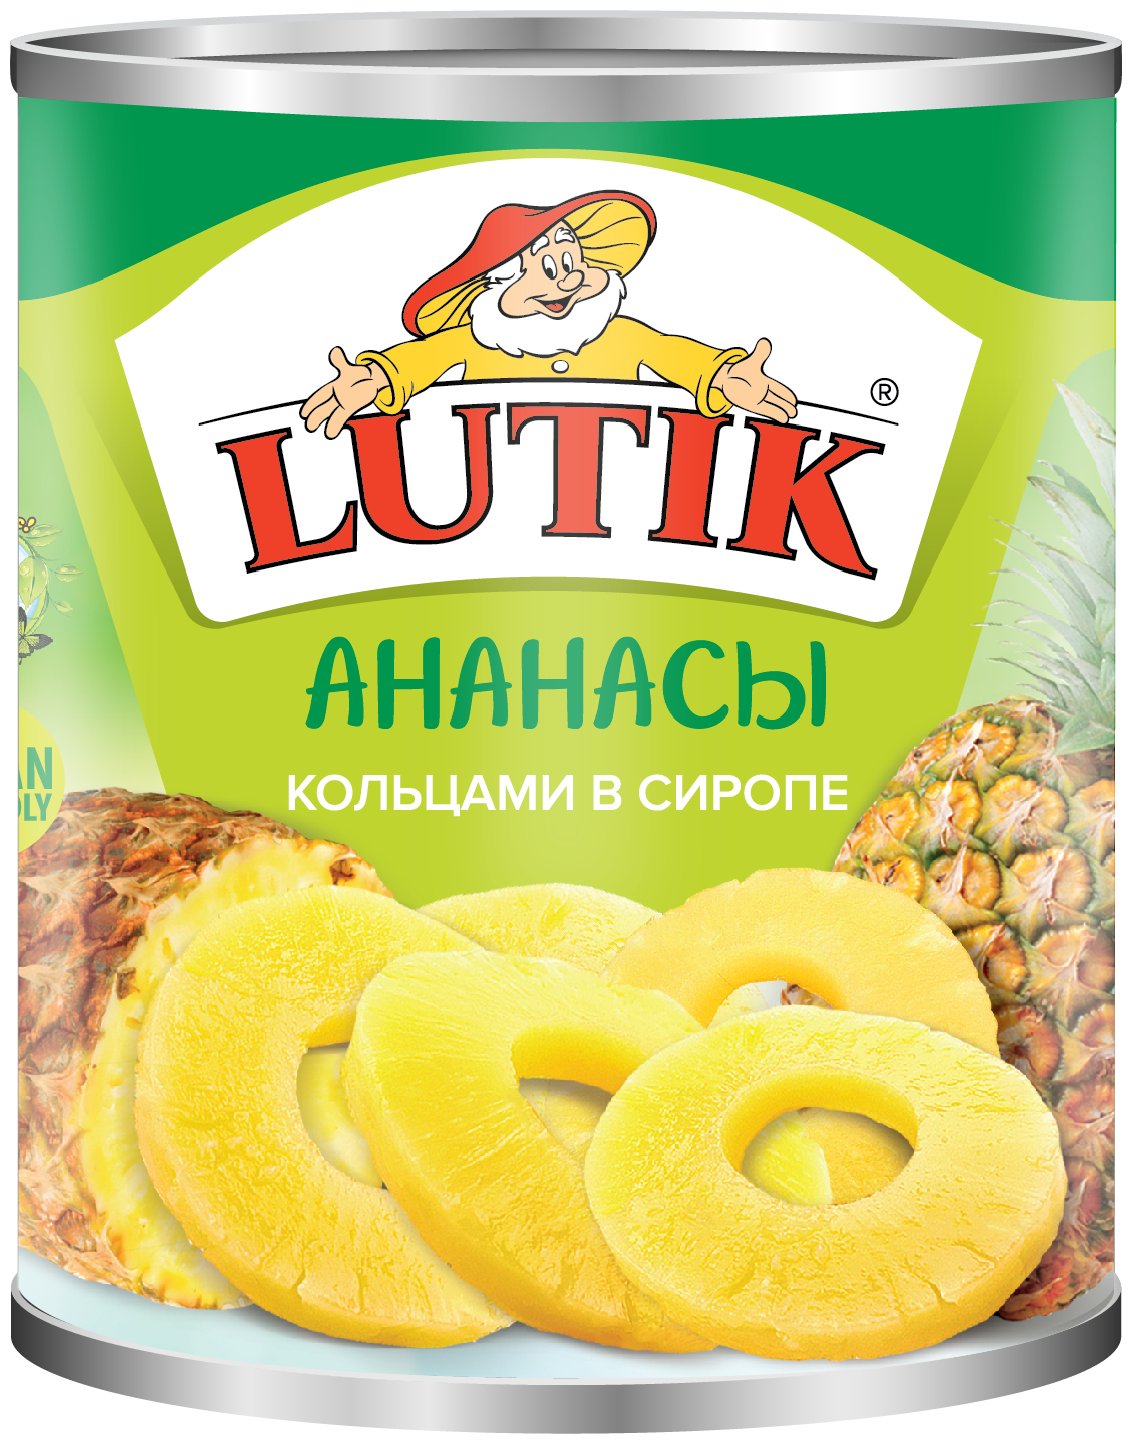 Консервированные ананасы Lutik кольцами в сиропе жестяная банка